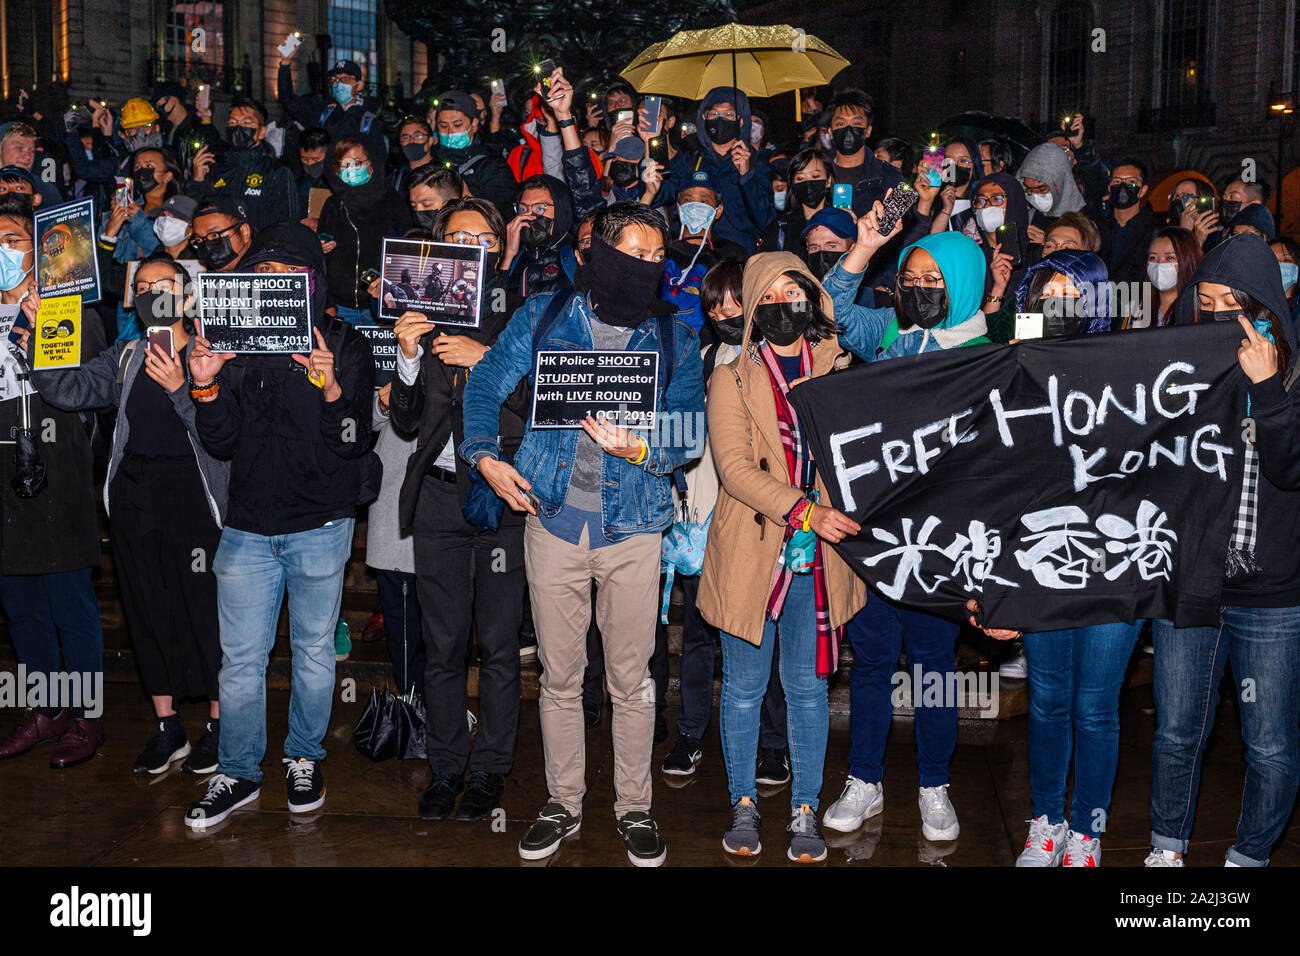 Hong Kong libre manifestation étudiante, Piccadilly Circus, Londres, 1er octobre 2019 Banque D'Images